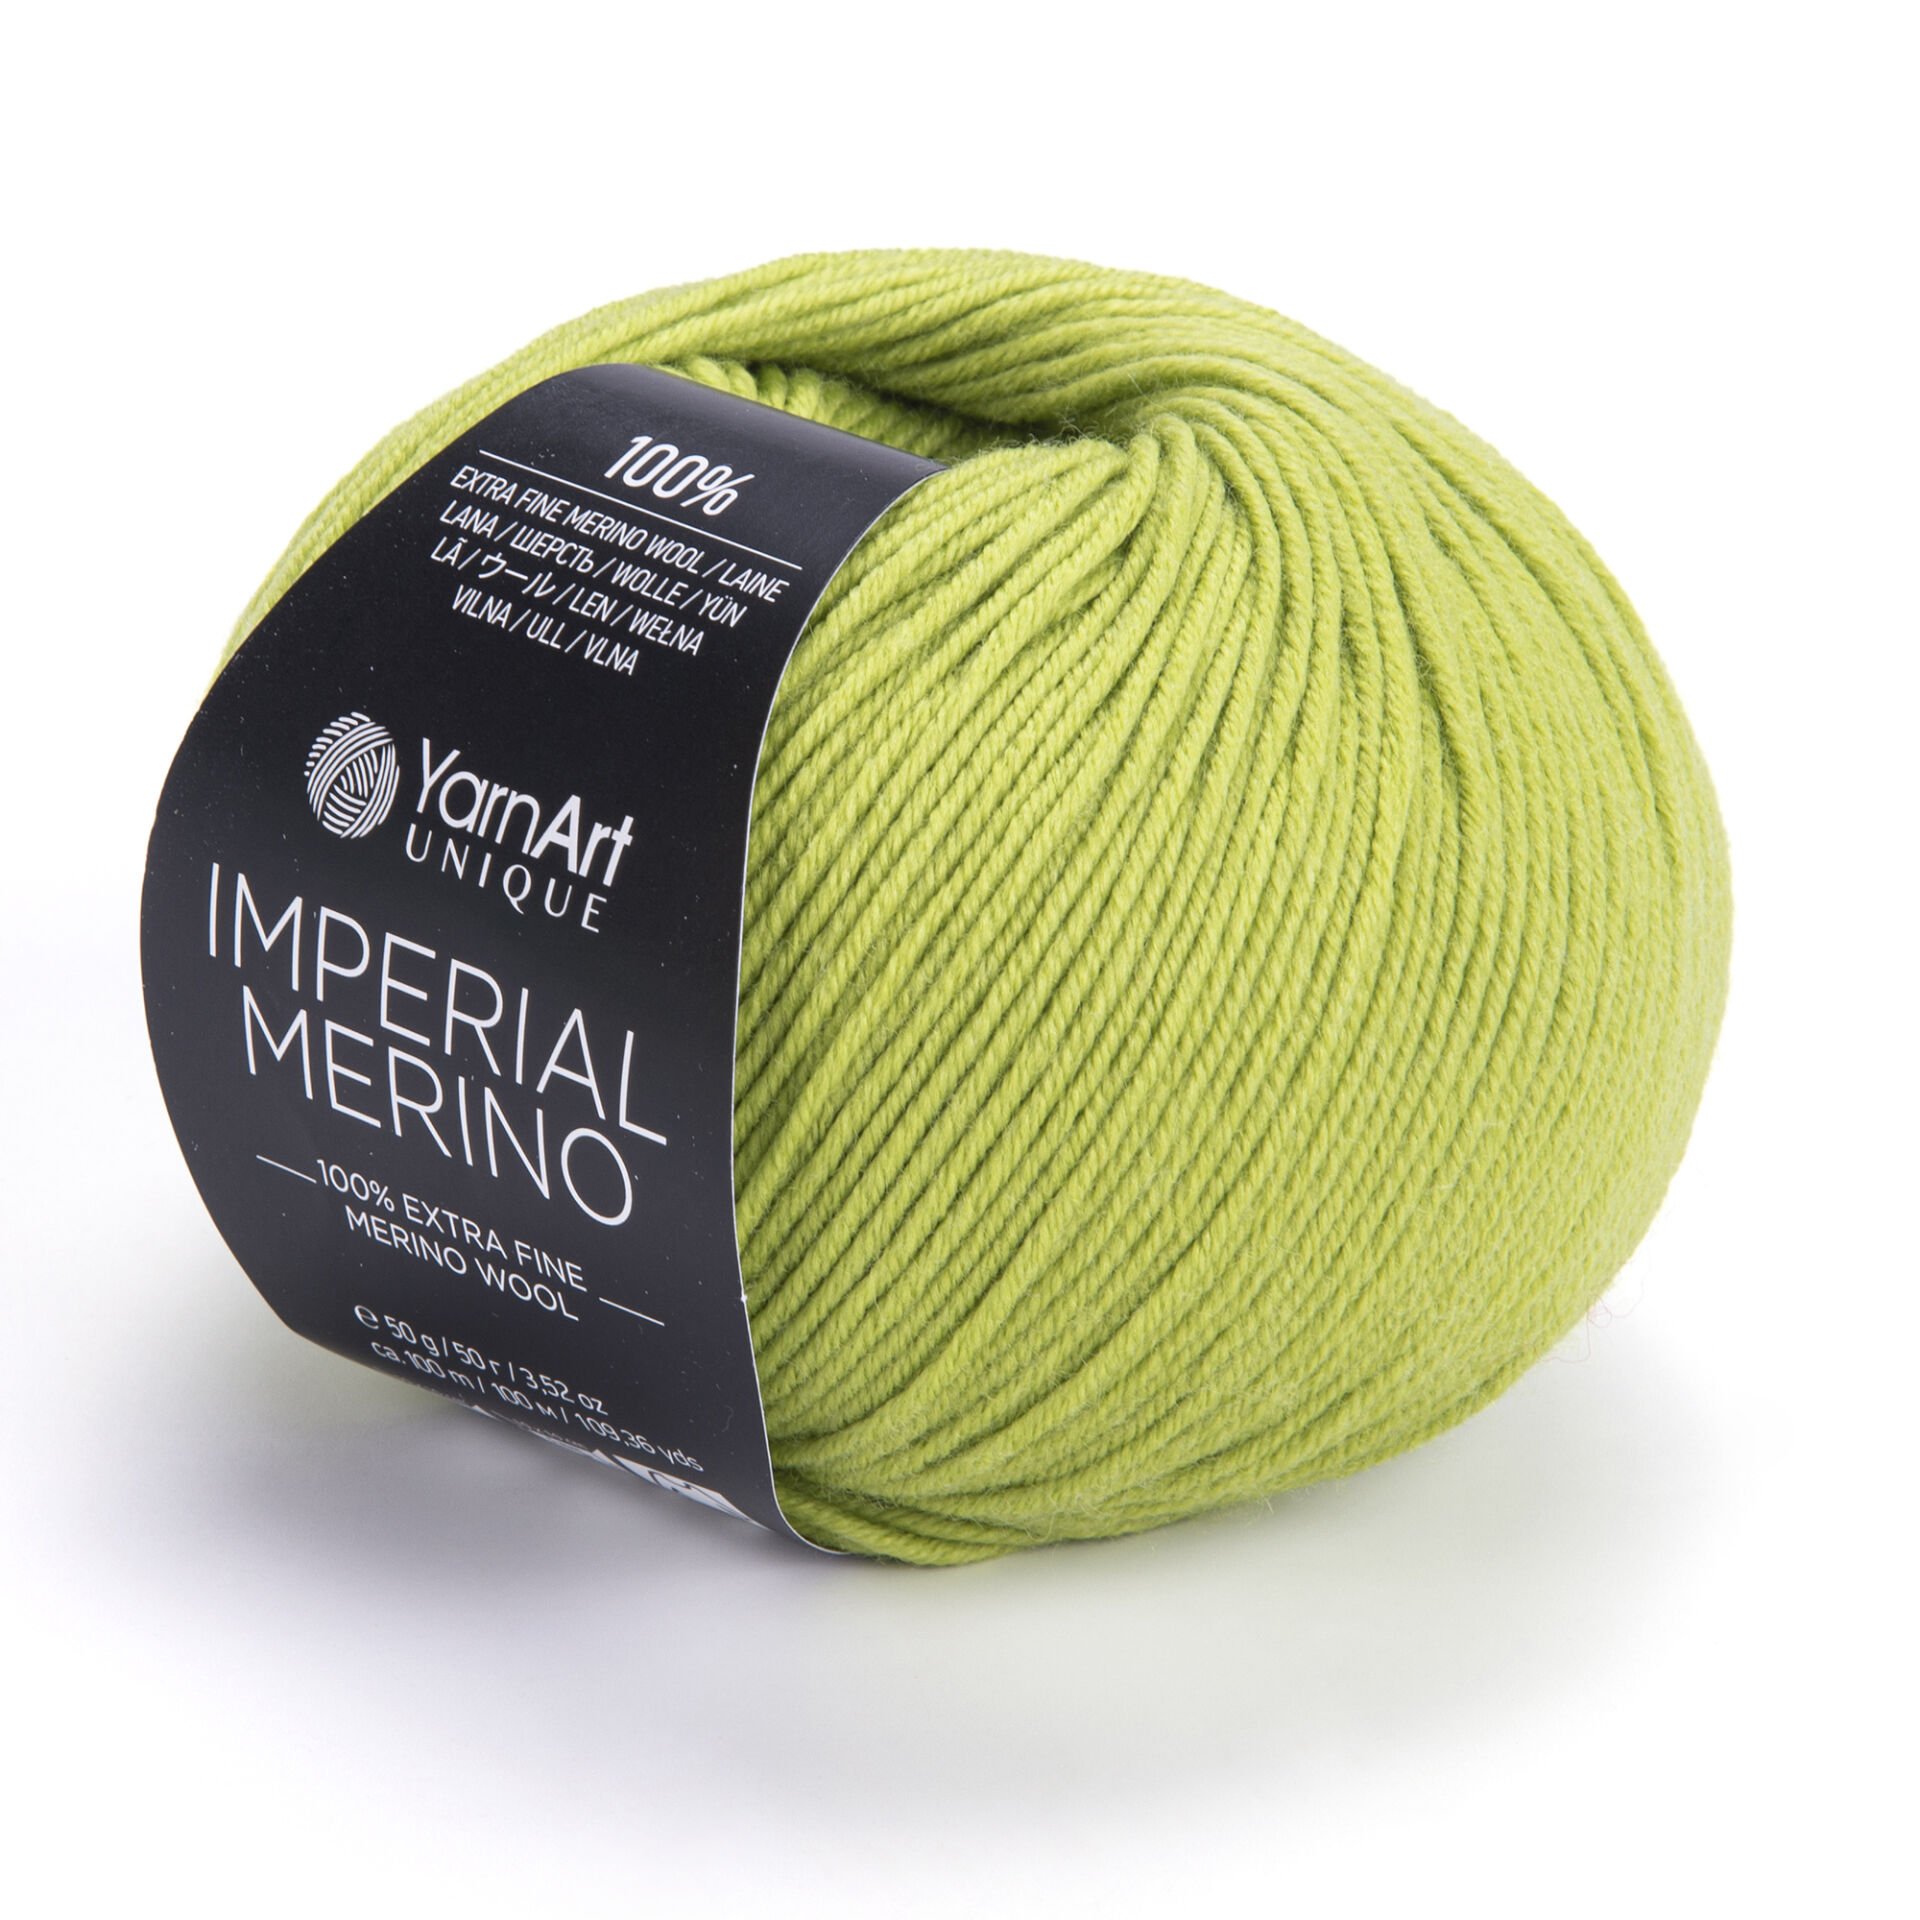 Knitting For Olive Cotton Merino 50 grams Terra Cotta Rose Color